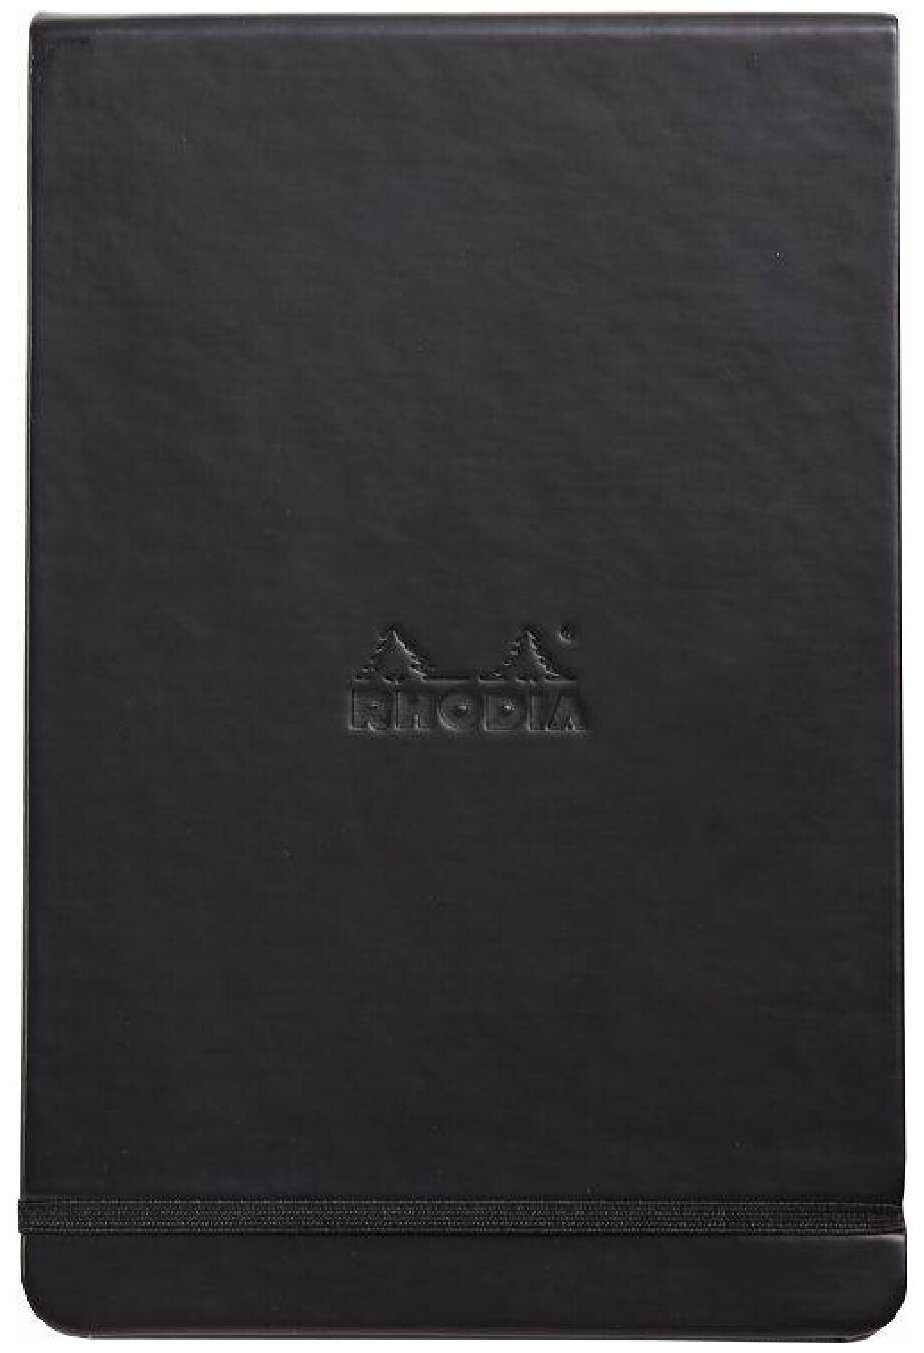 Блокнот в точку Rhodia Webnotebook «Пейзаж» А5 90 г/м2 96 листов цвета слоновой кости (с микроперфорацией), плотная черная обложка